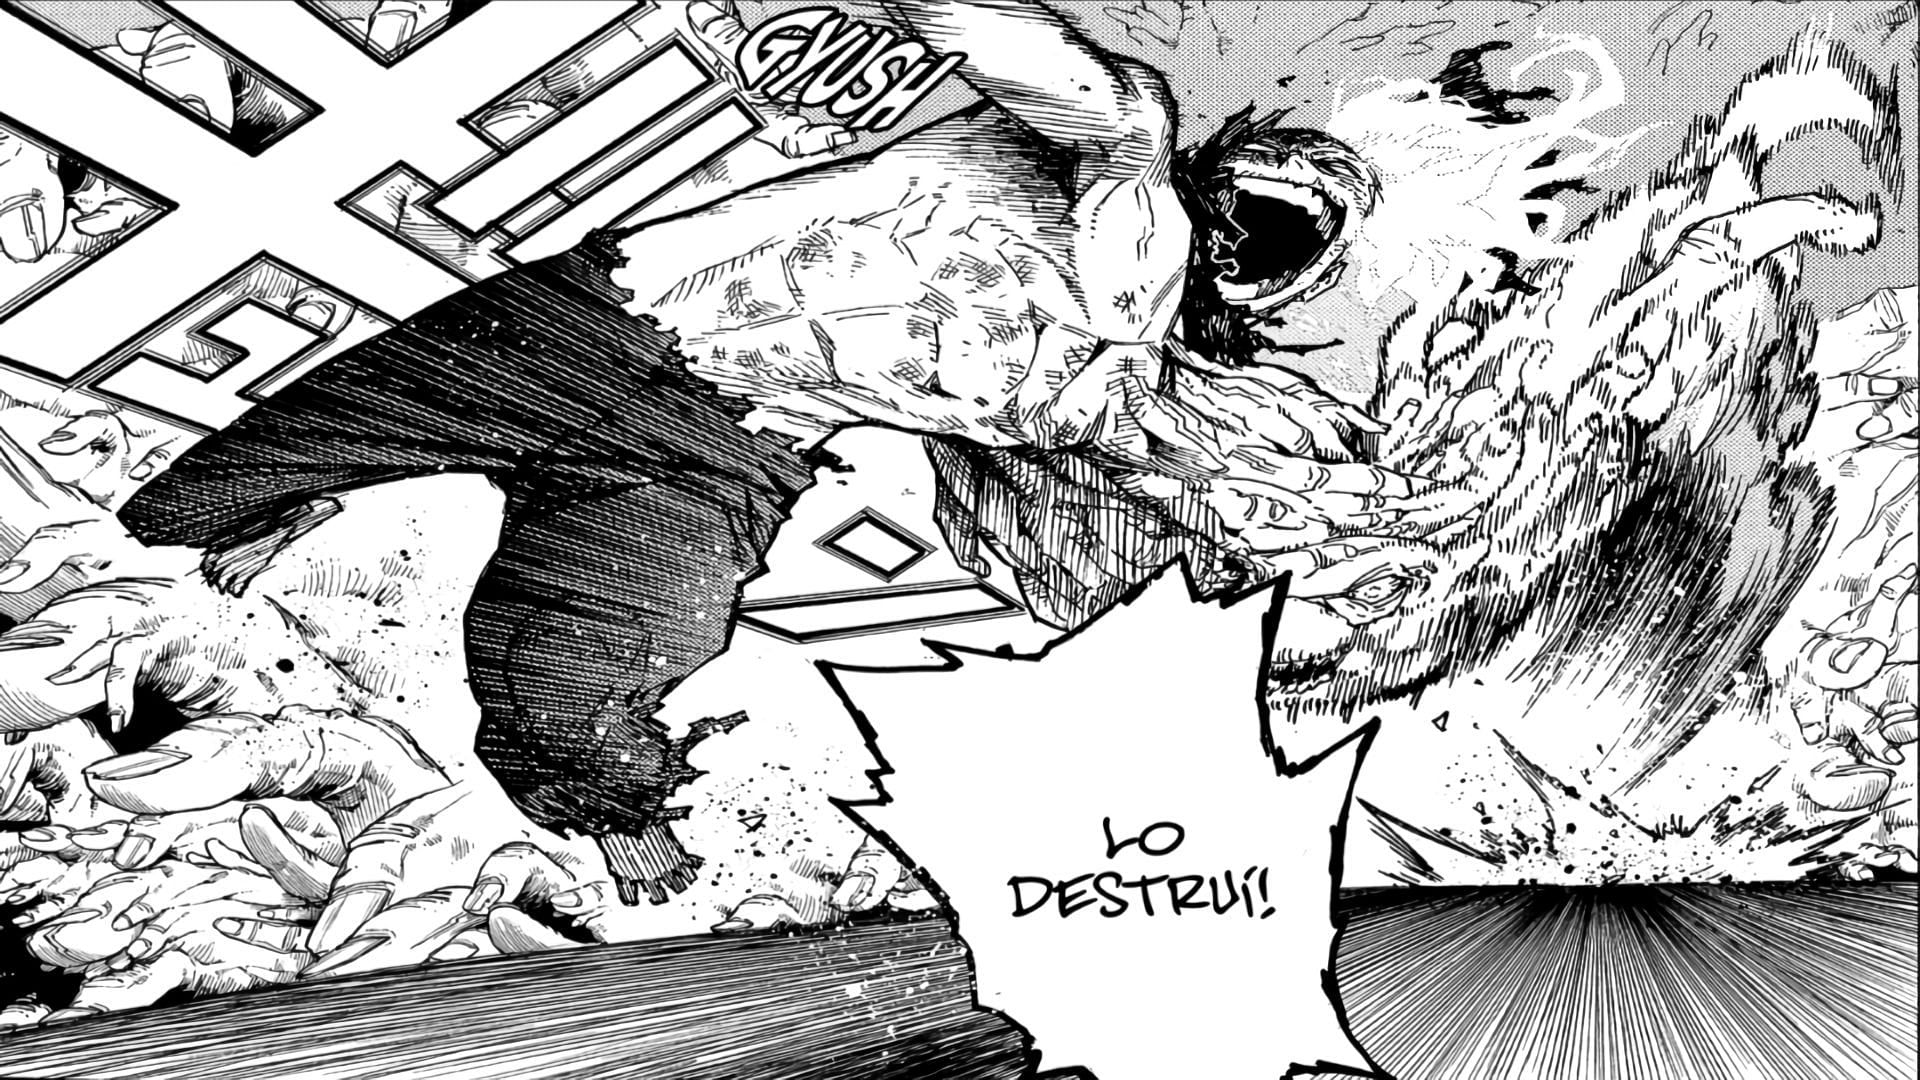 Shigaraki attacking Bakugo in My Hero Academia Chapter 365 (Image via Kohei Horikoshi/ Shueisha)